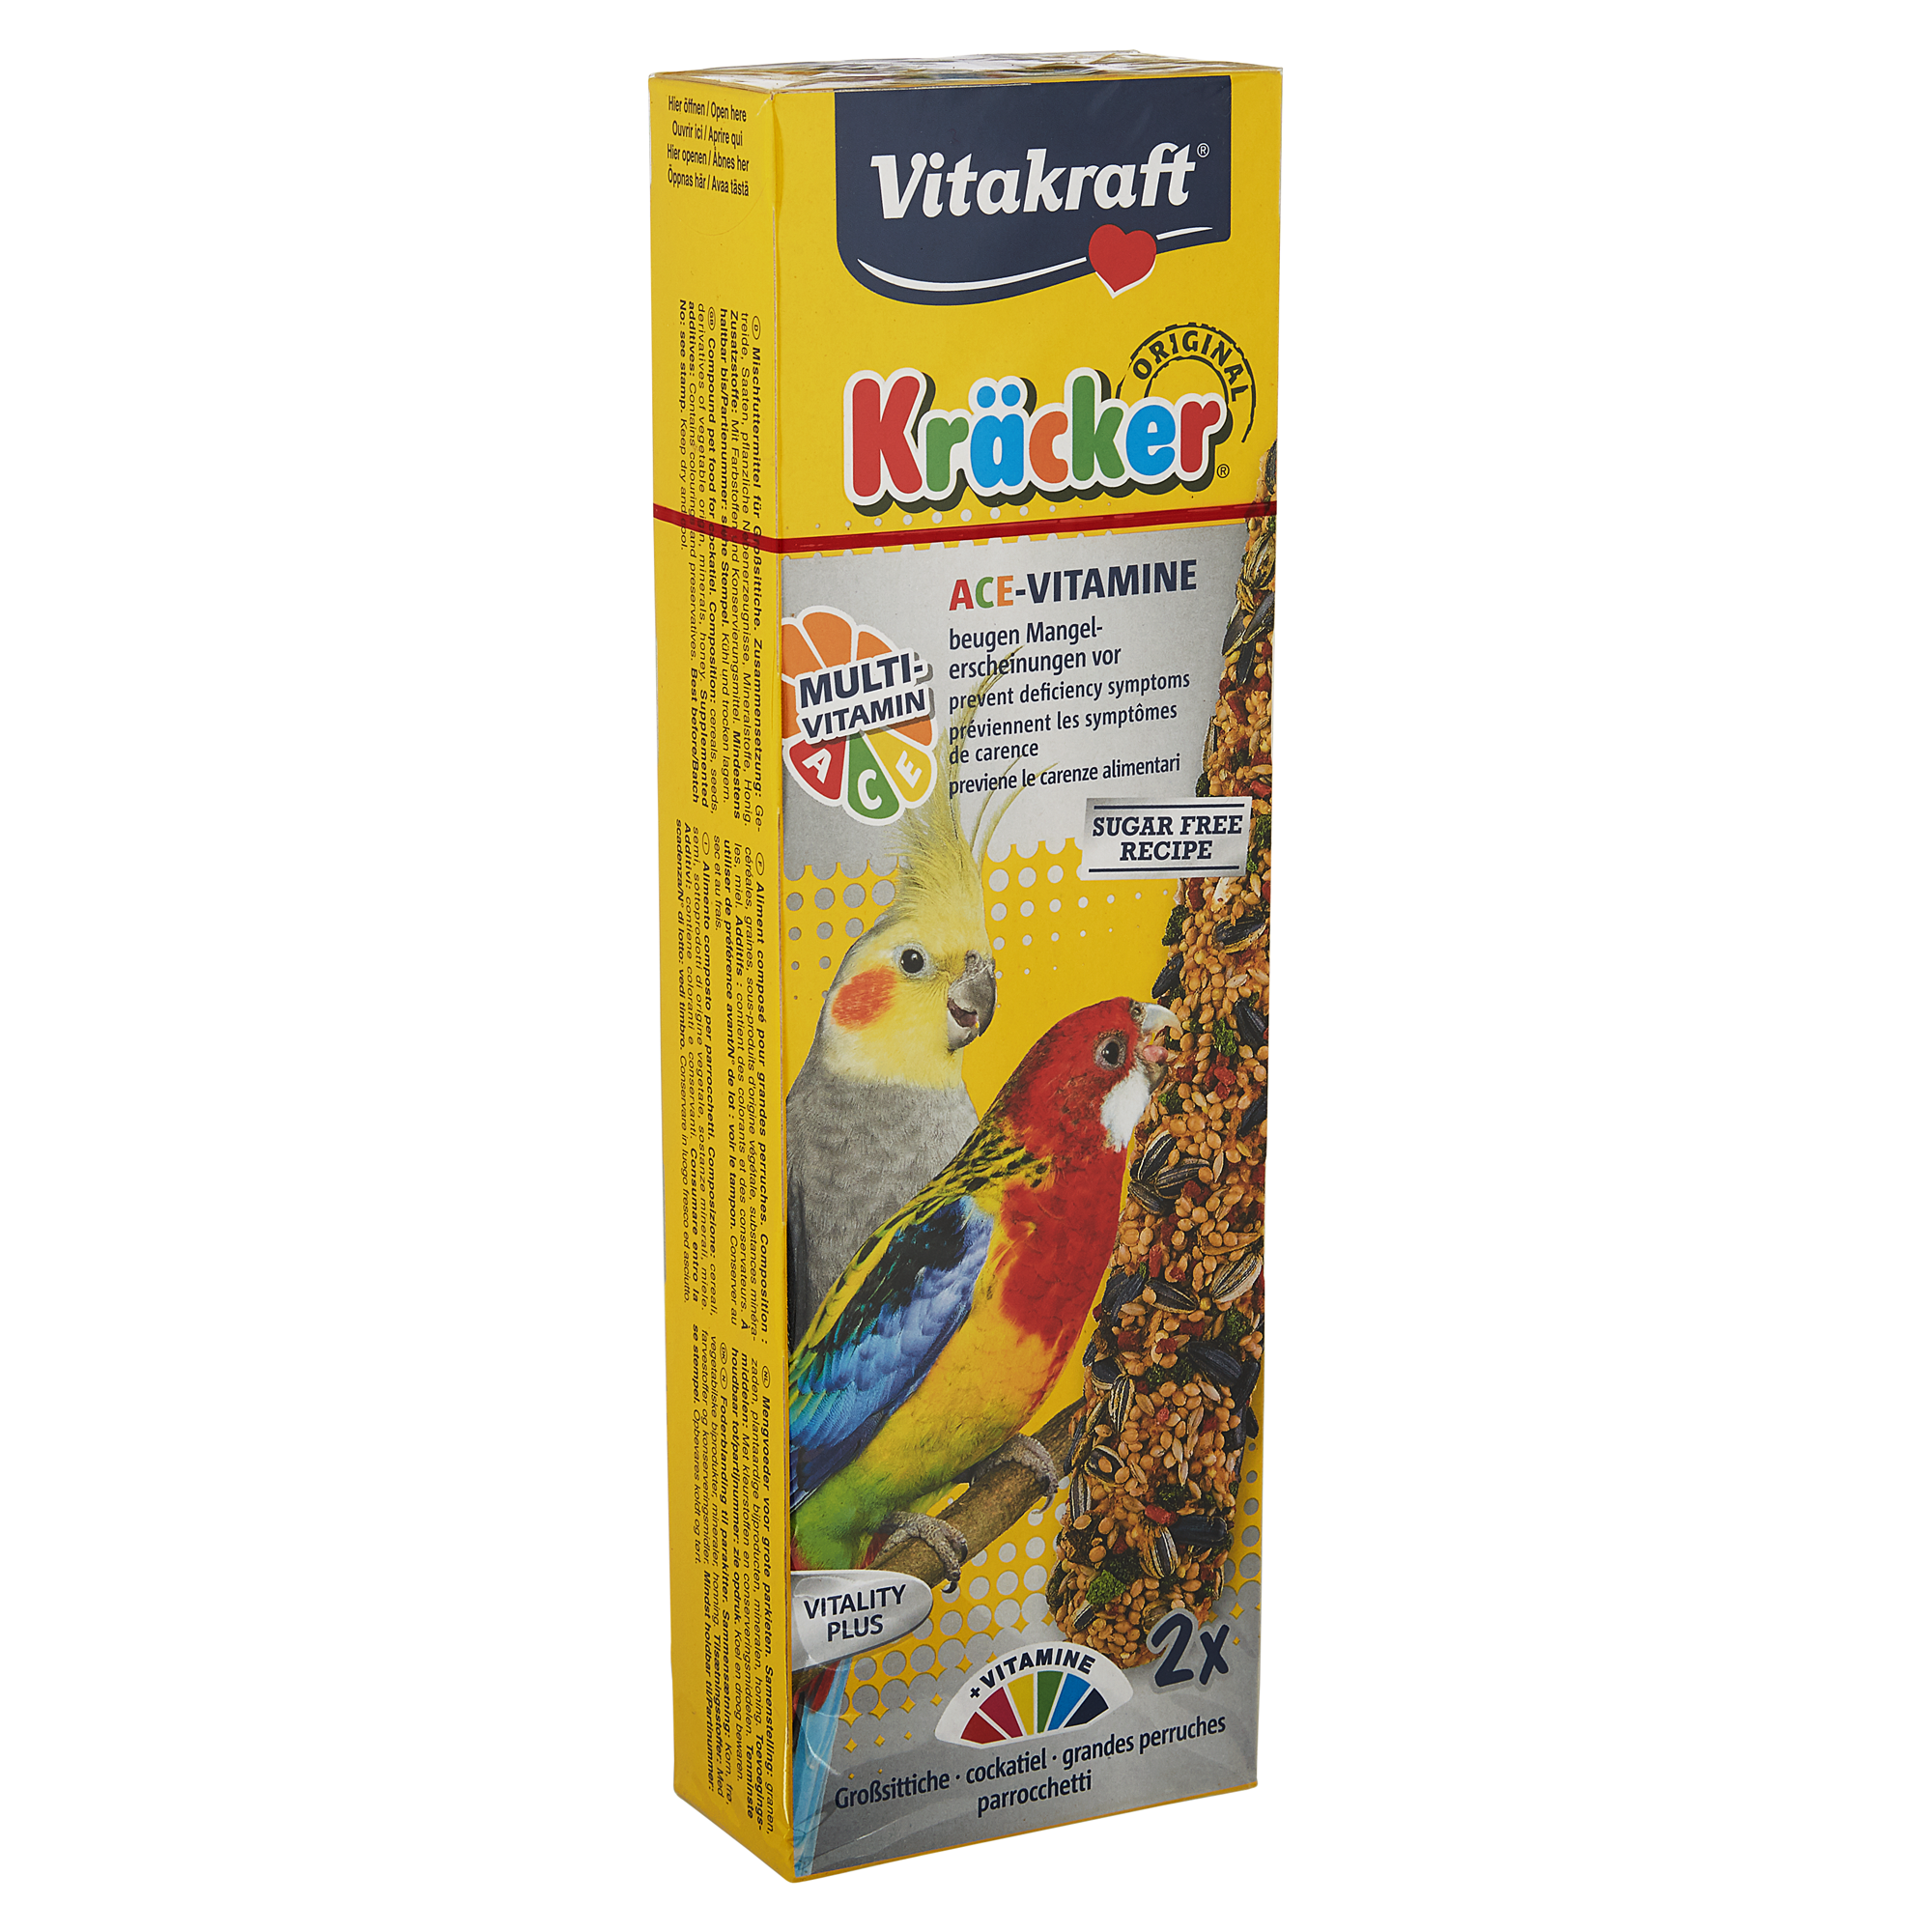 Vogelfutter Kräcker® Original Multivitamin 2 Stück für Großsittiche + product picture